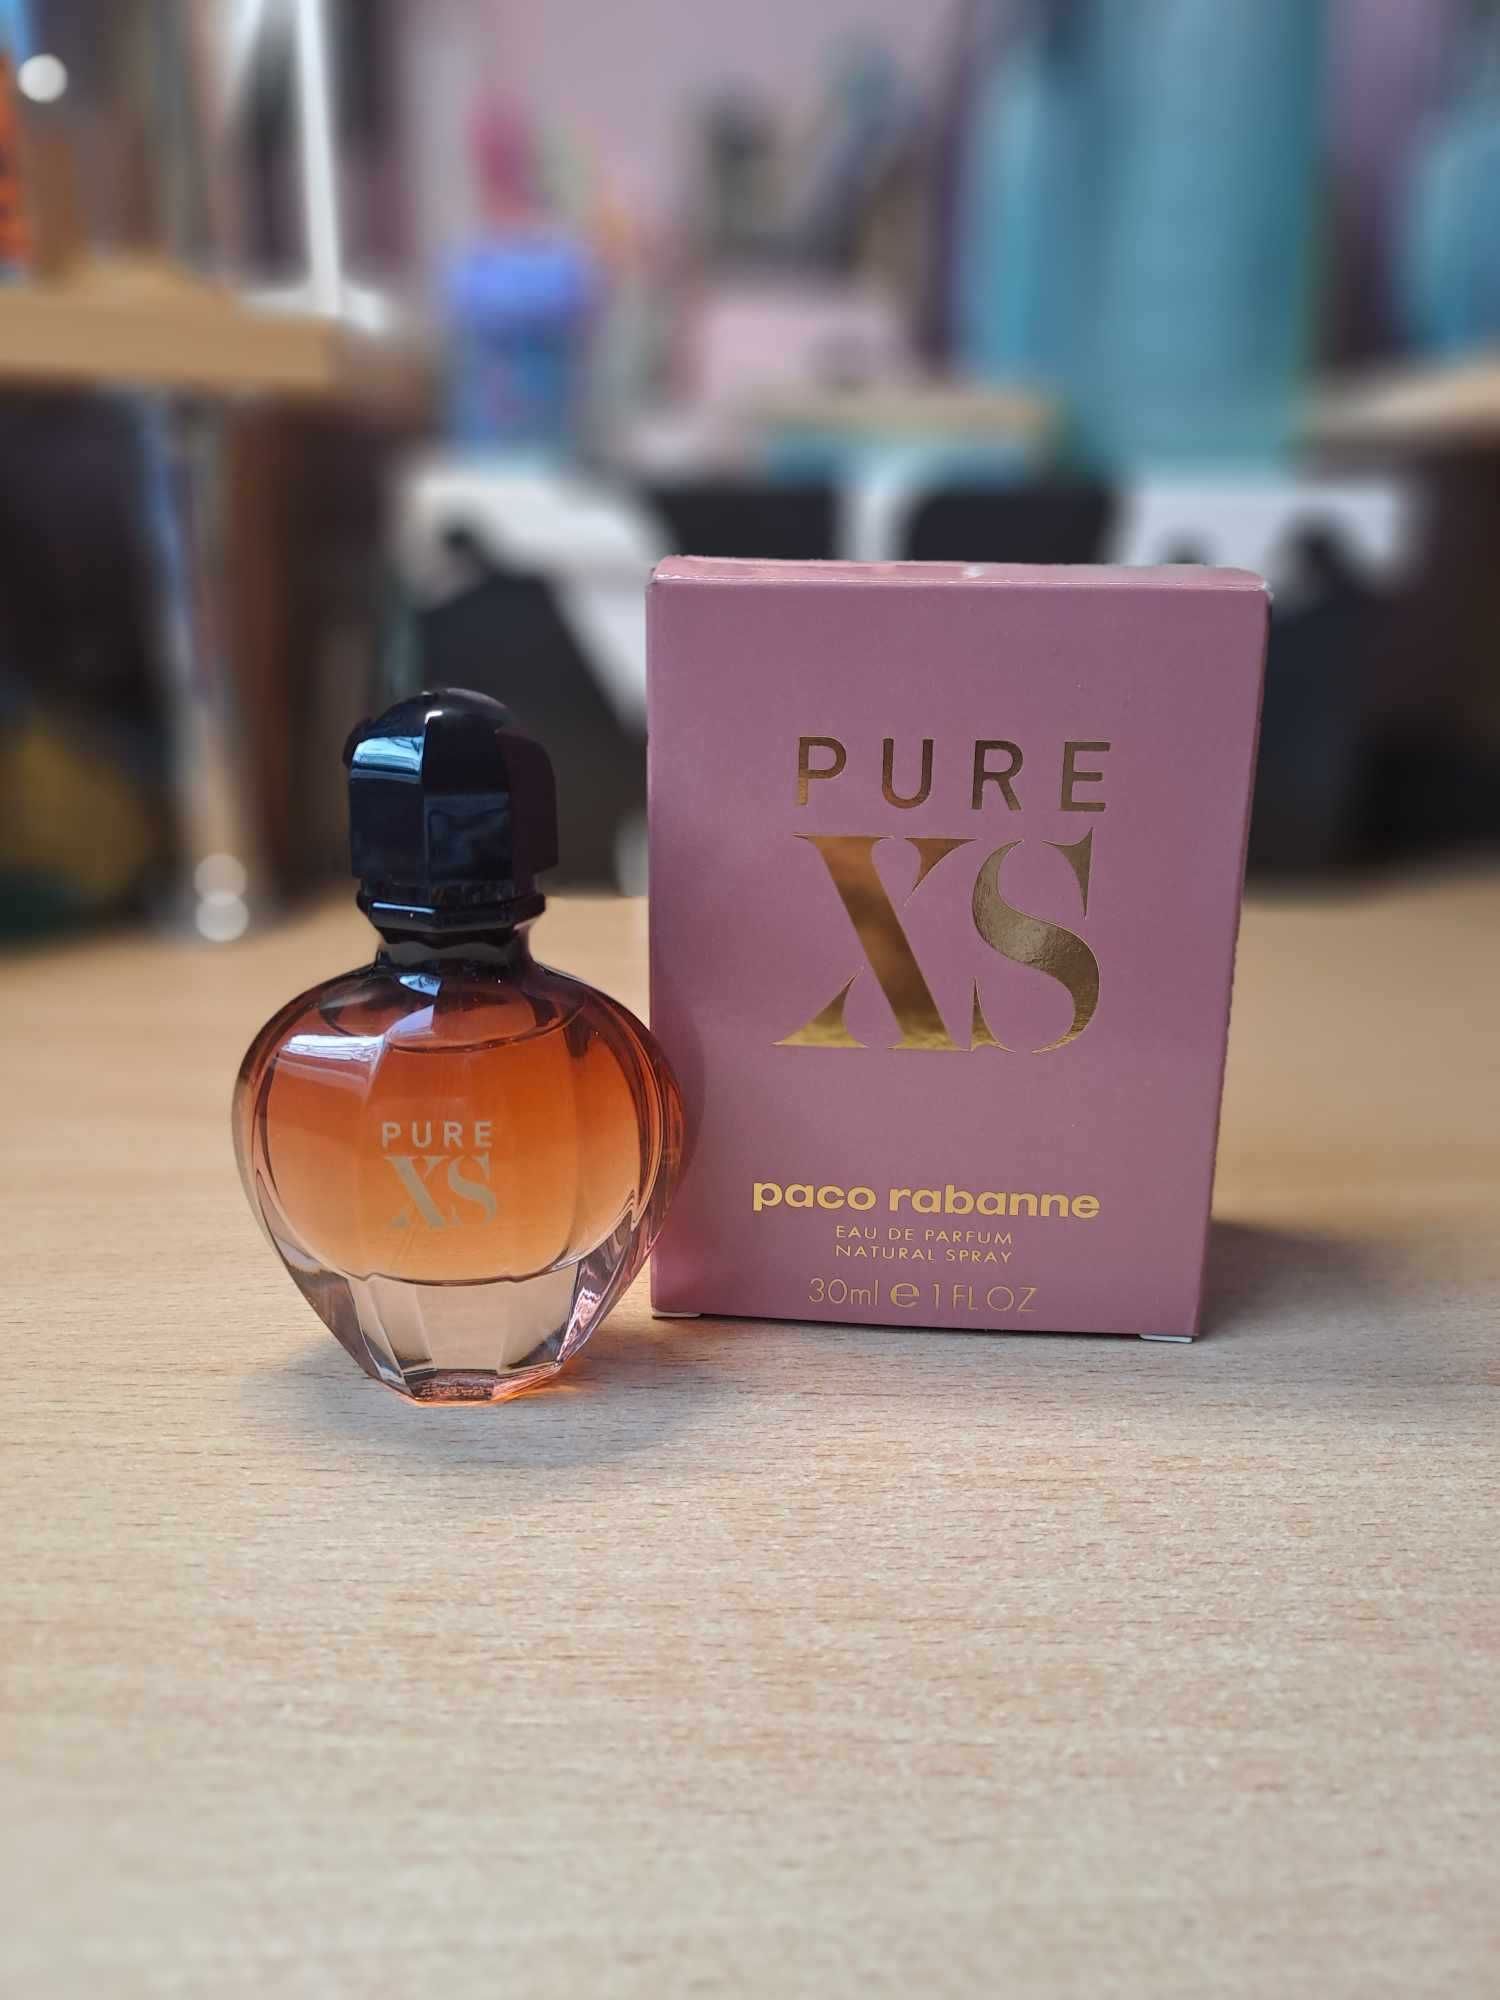 Pure XS paco rabanne 30ml eau de parfum